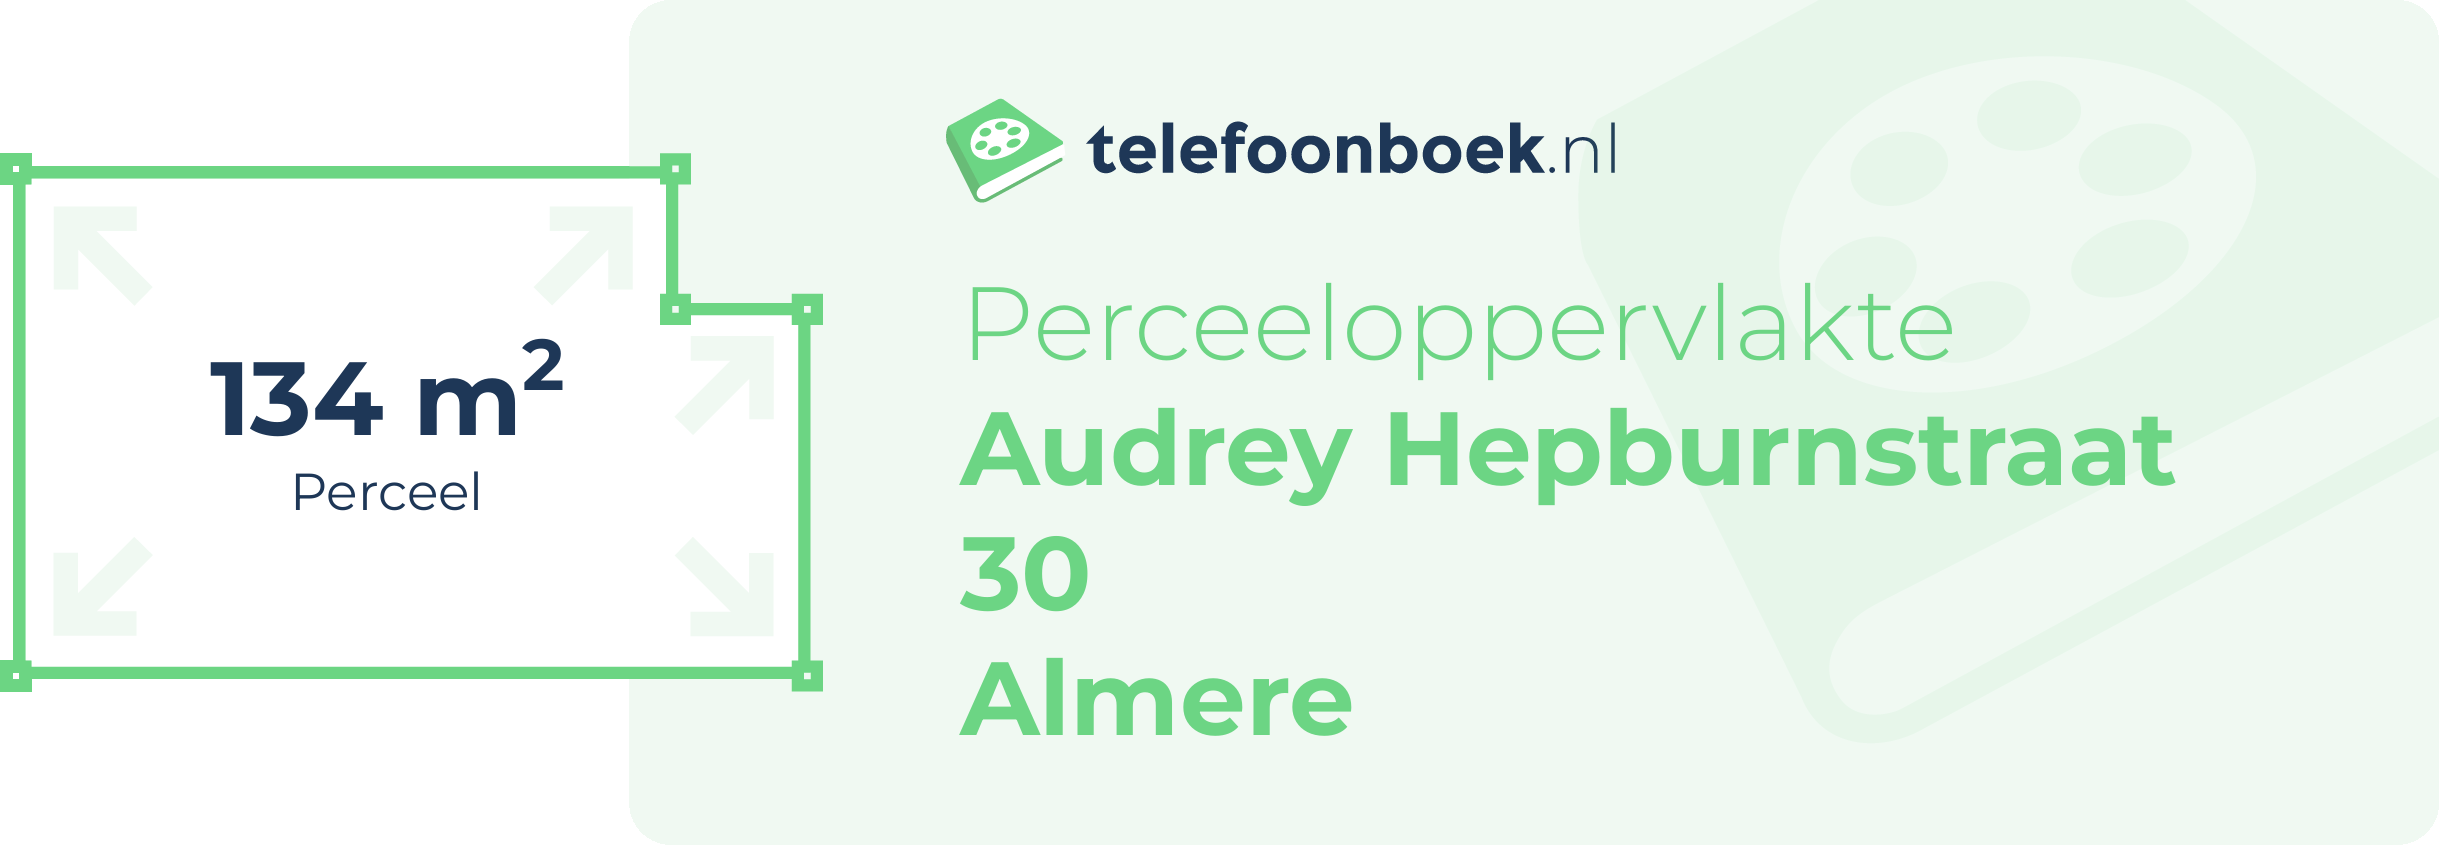 Perceeloppervlakte Audrey Hepburnstraat 30 Almere